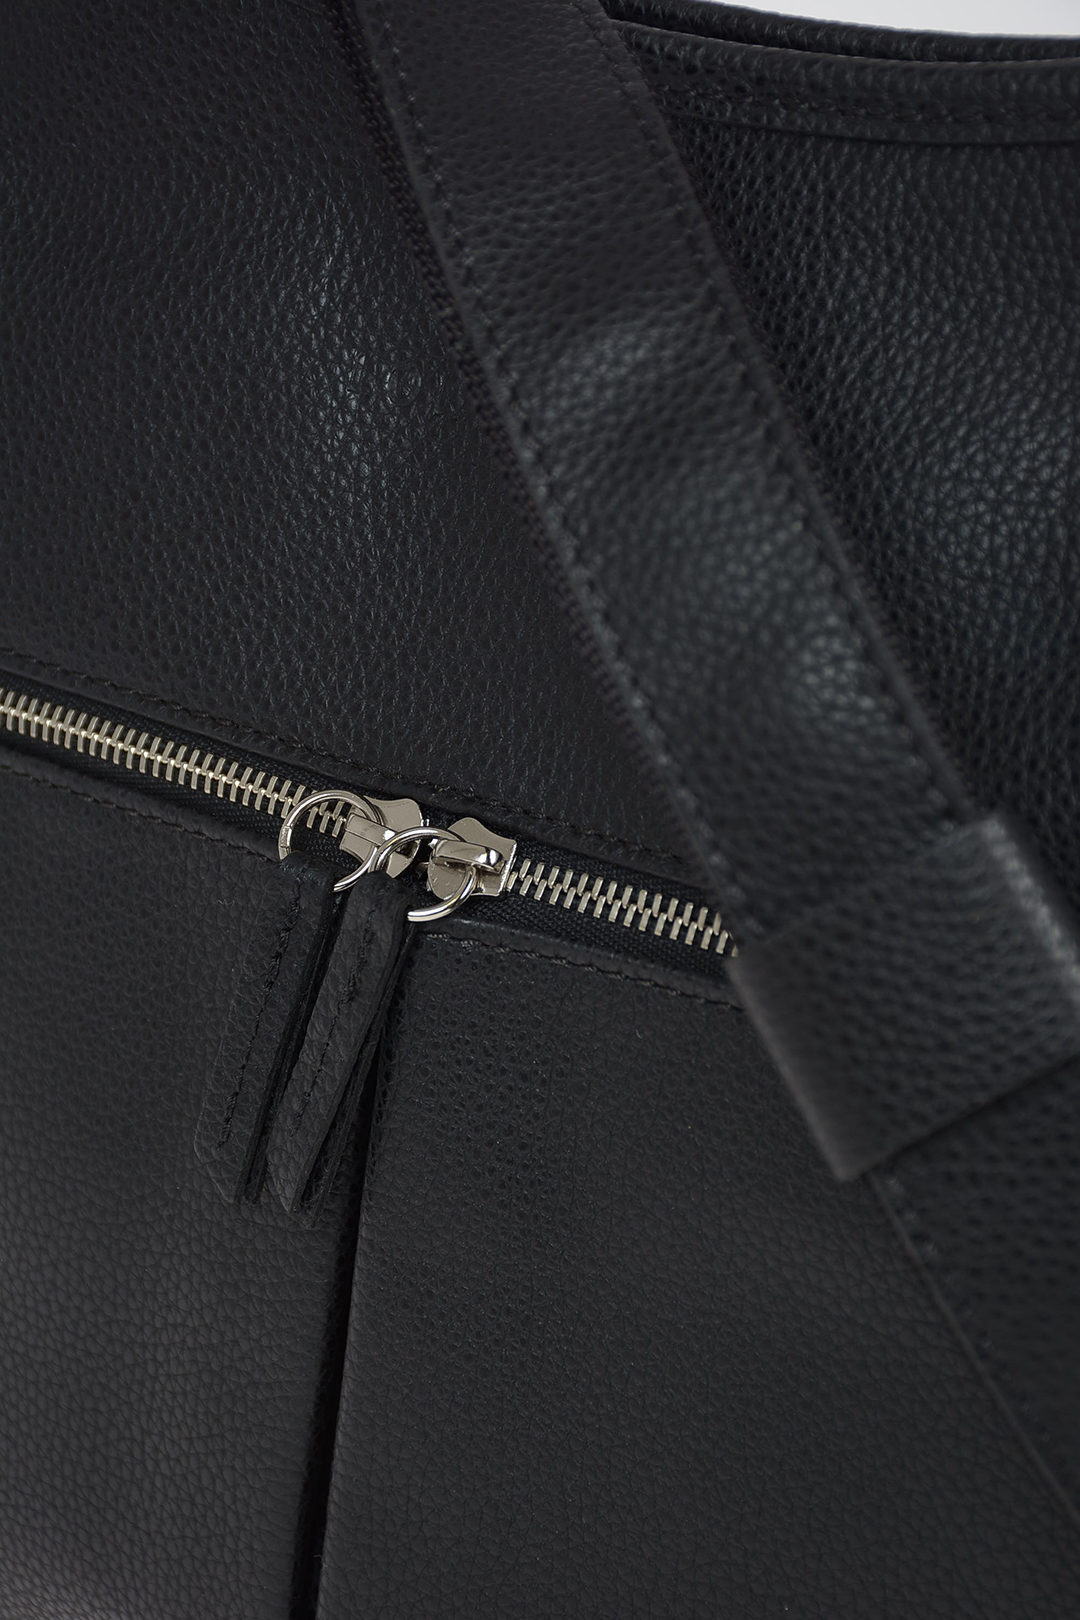 Longchamp Outer Pockets Shoulder Bags